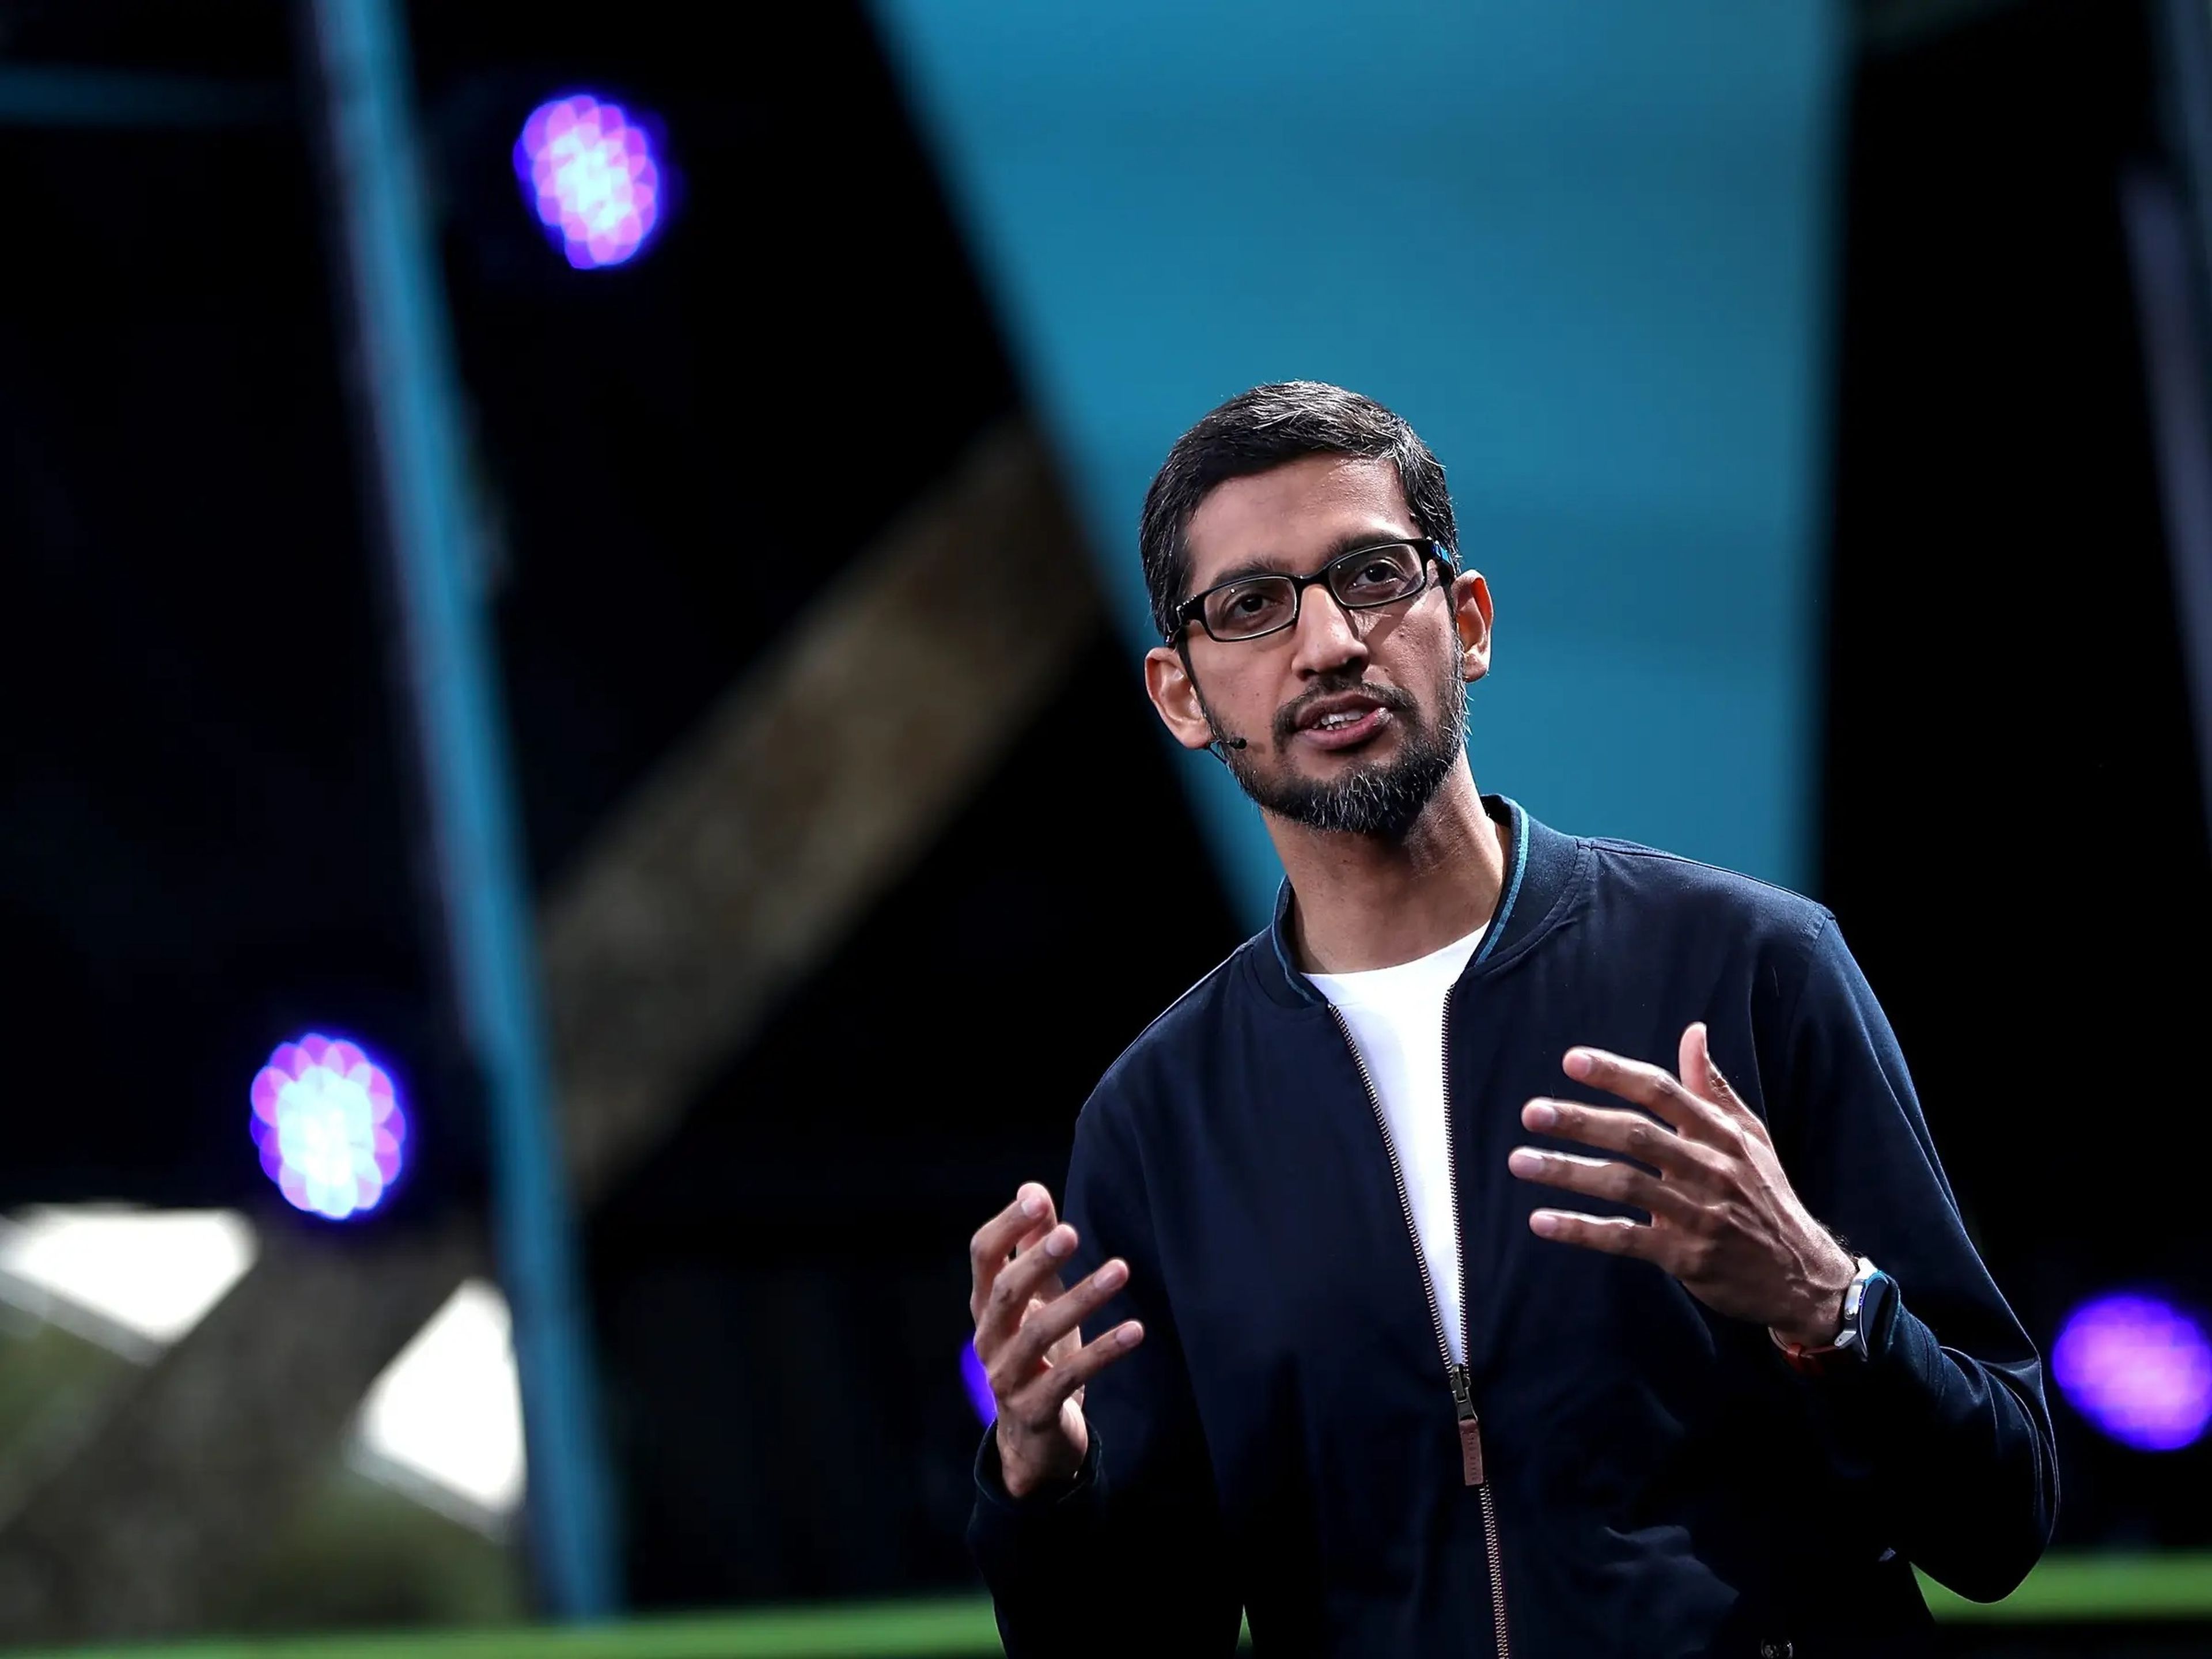 El CEO de Google, Sundar Pichai, hablando durante un evento de Google en California en 2016.